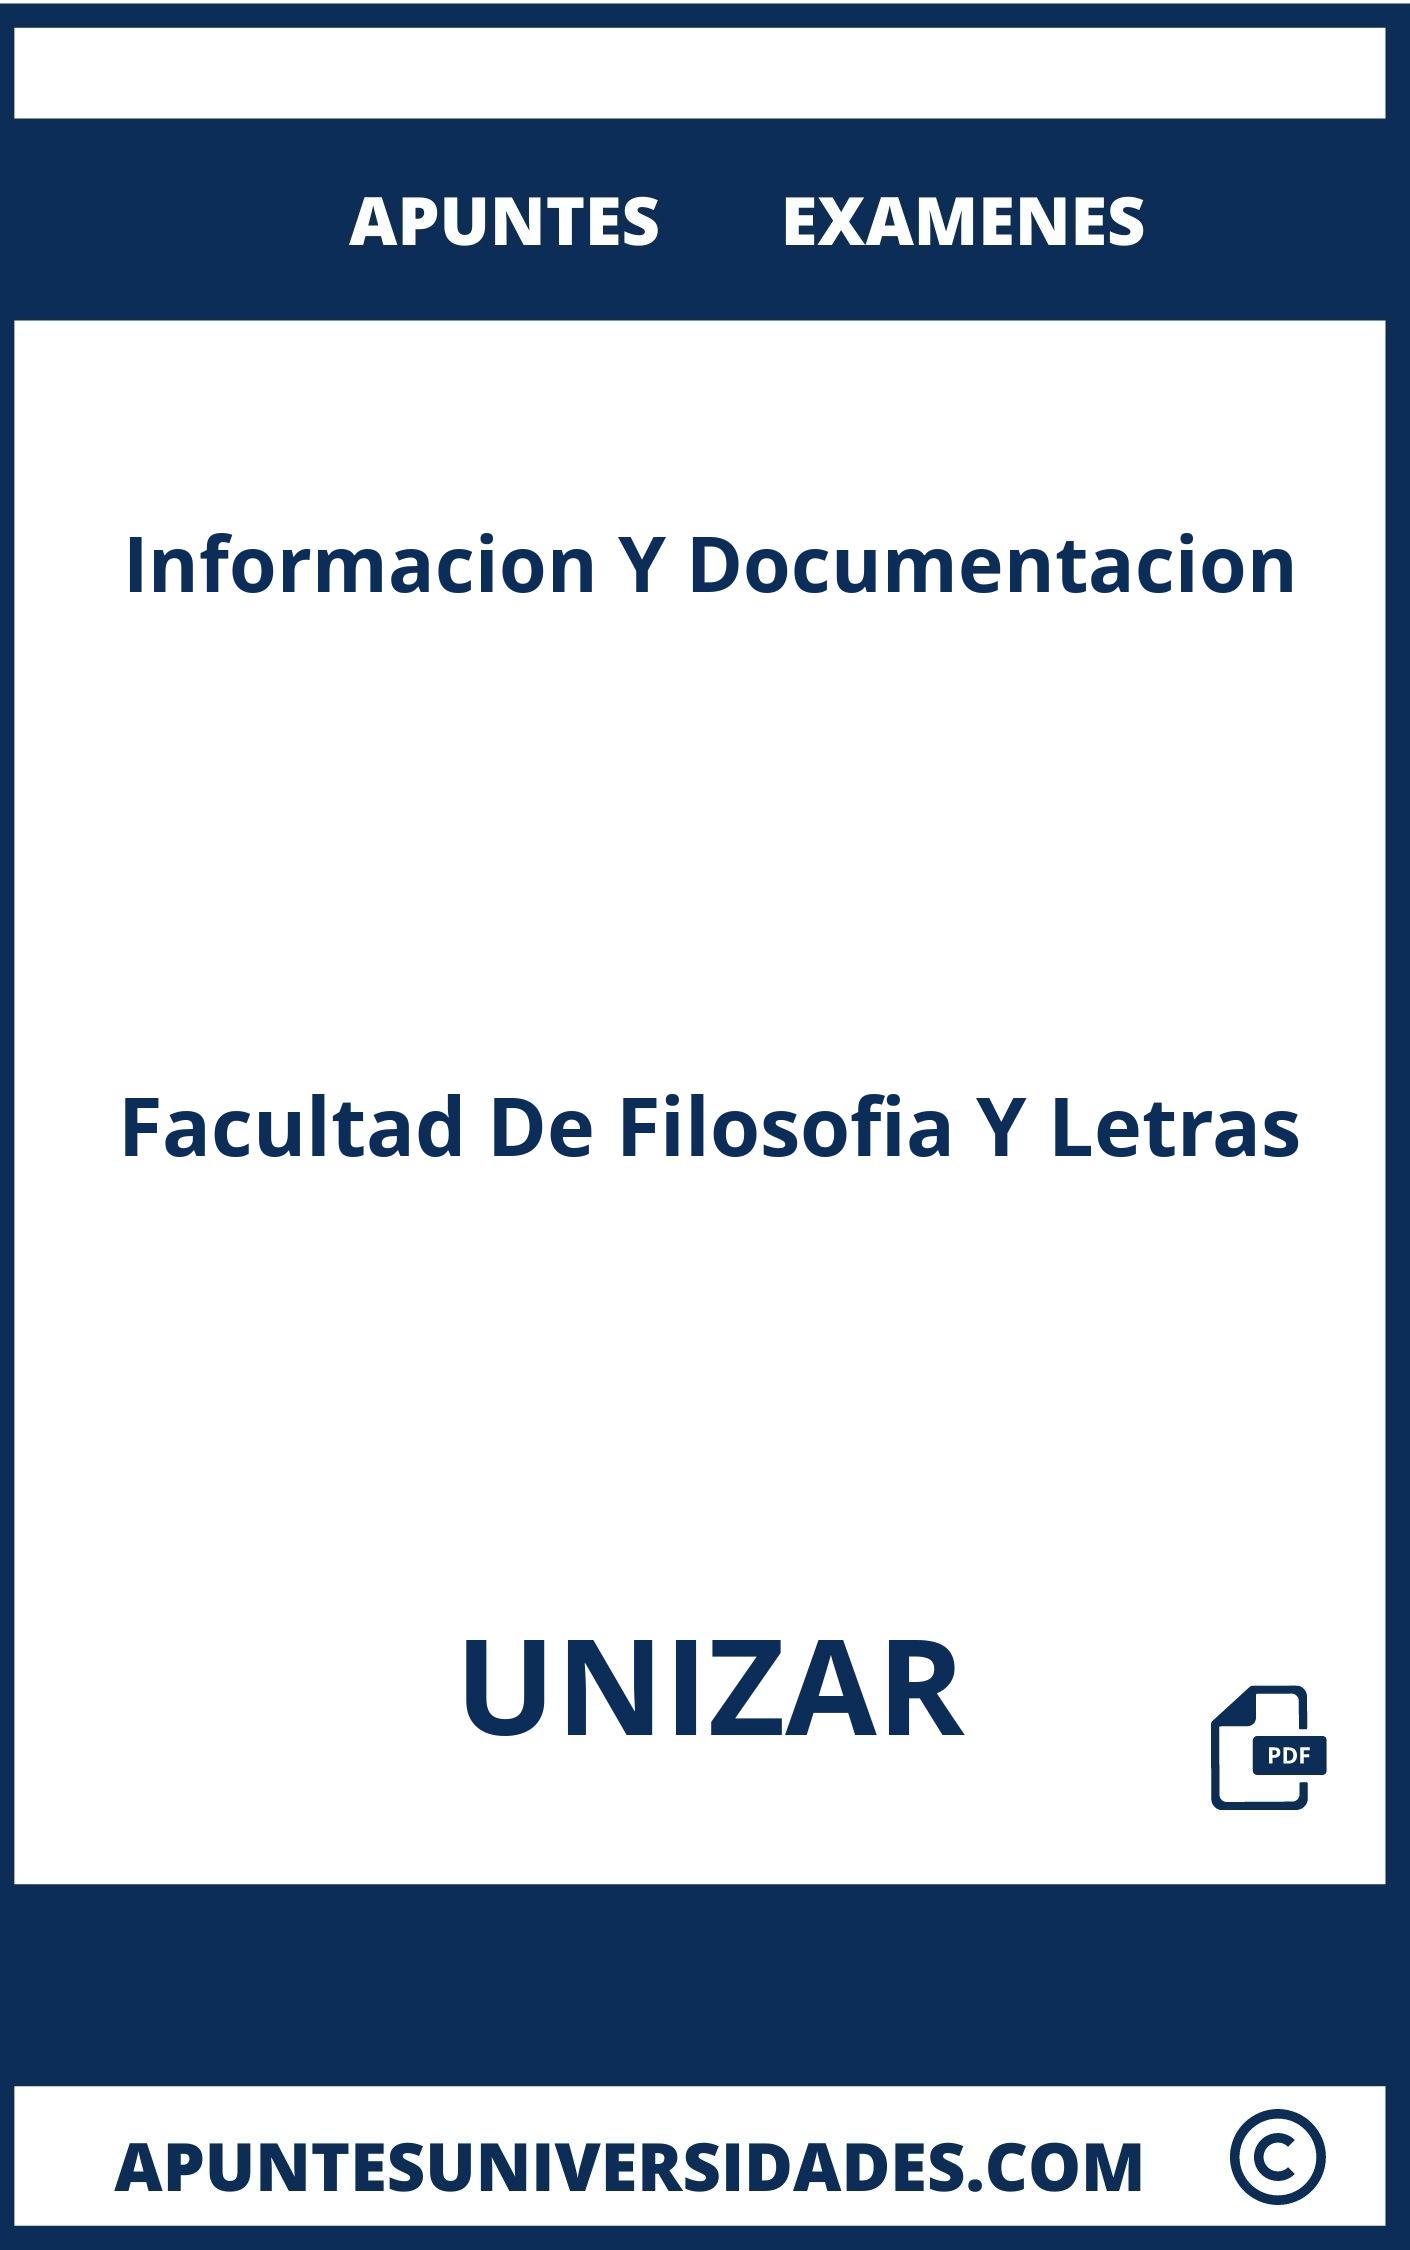 Apuntes y Examenes Informacion Y Documentacion UNIZAR